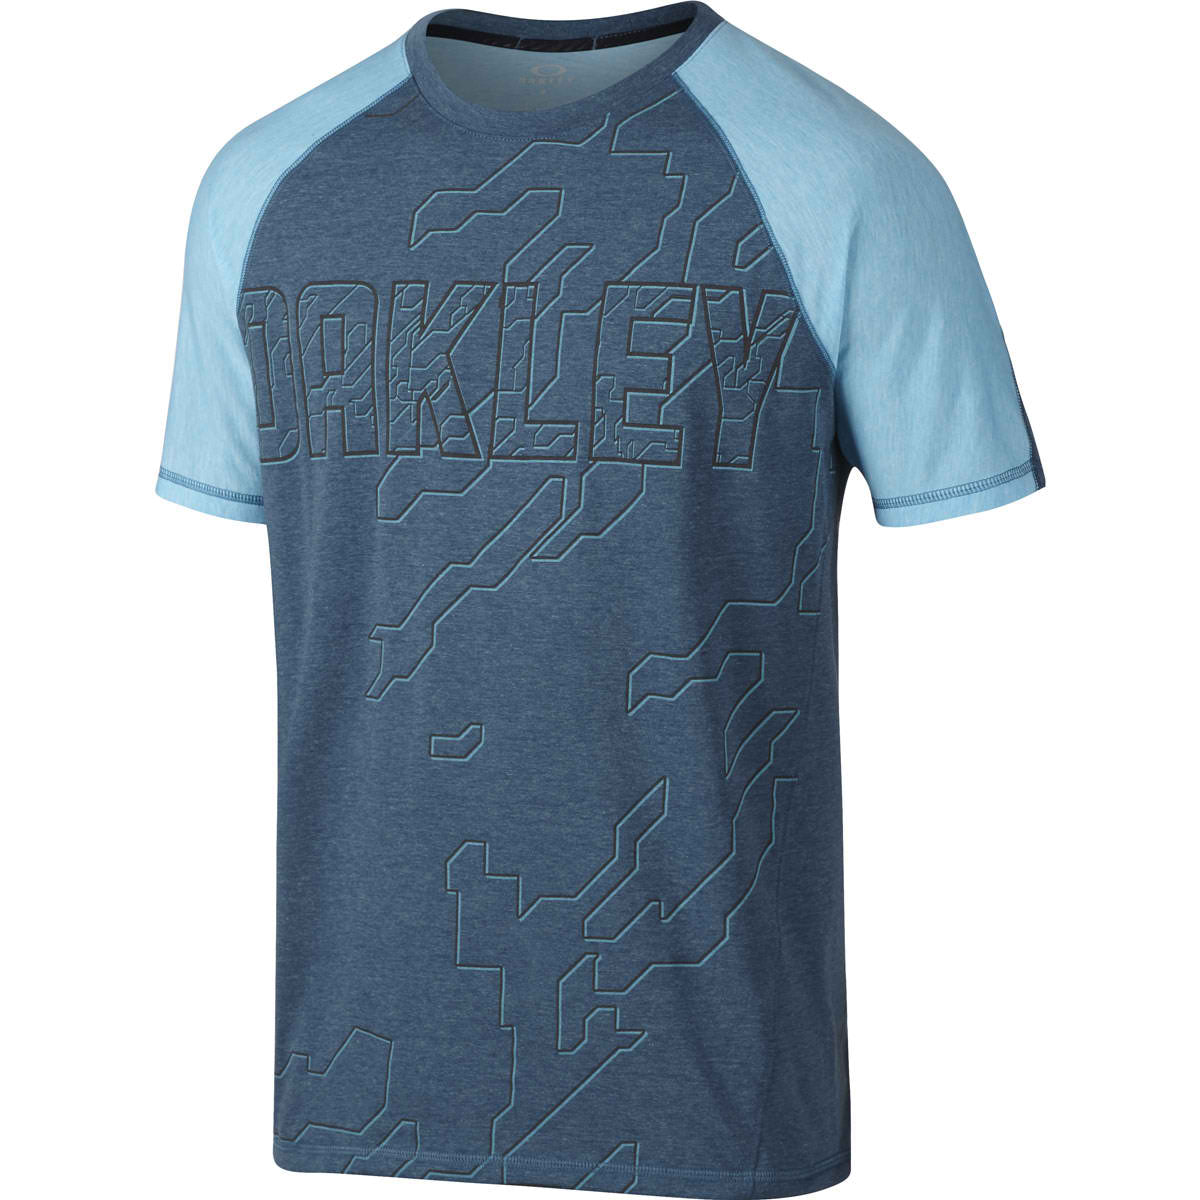 Oakley Mix It Up Evolve Men's Short-Sleeve Shirts-433559